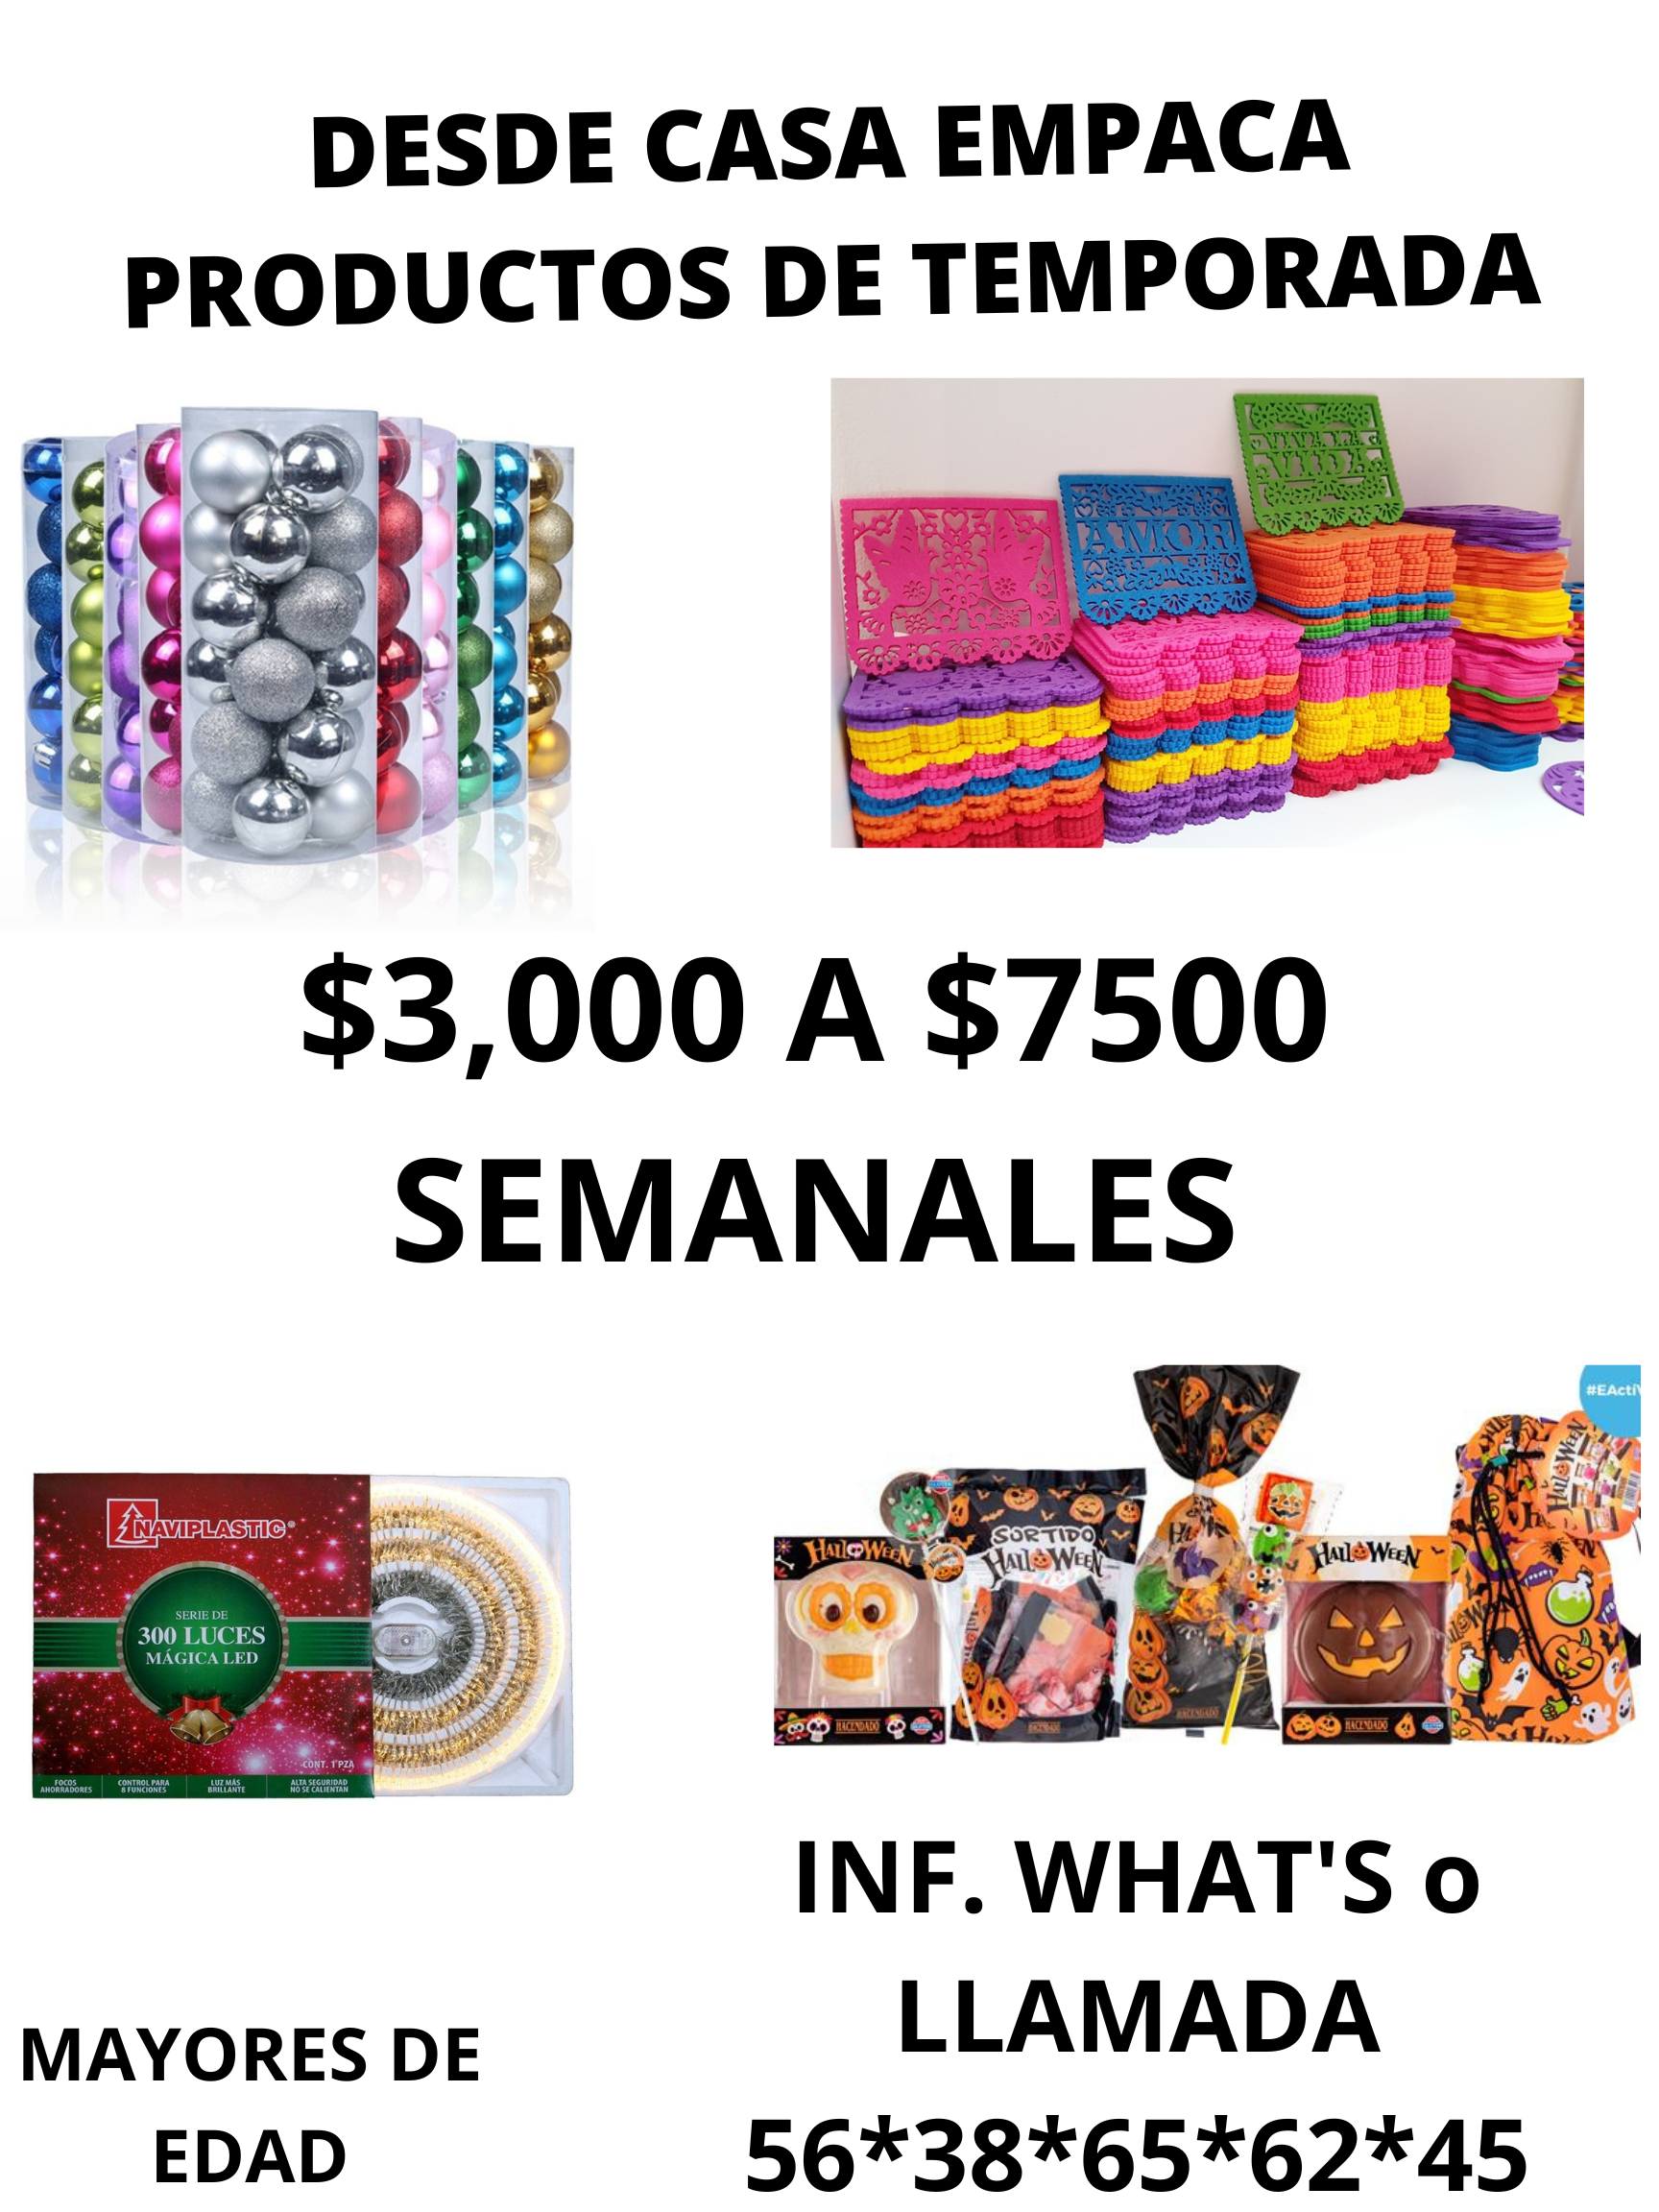 DESDE CASA EMPACA
PRODUCTOS DE TEMPORADA

     

-
4

$3,000 A $7500
SEMANALES

  

MAYORES DE LLAMADA
EDAD 56*38*65*62*45